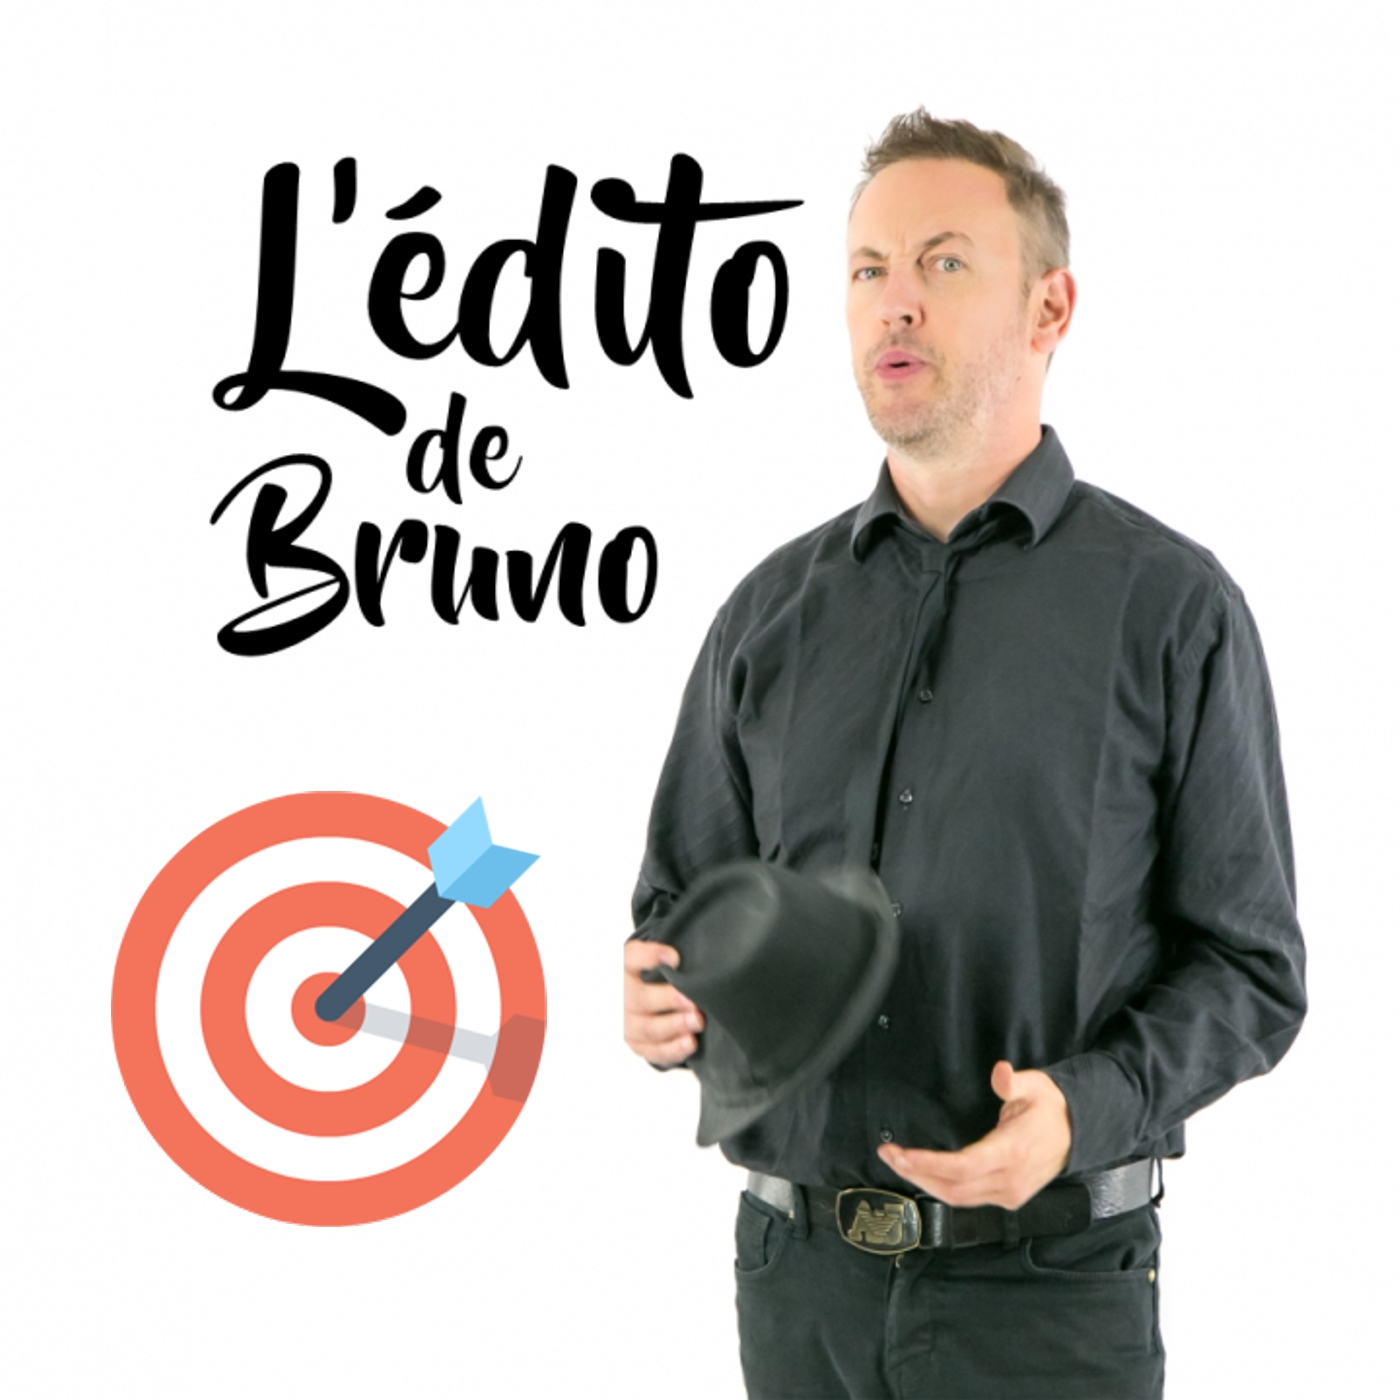 L'édito de Bruno du 04 05 2021 L'édito de Bruno de l'émission Tendance à m'plaire sur Radio G! L'édito de Bruno du 04 05 2021